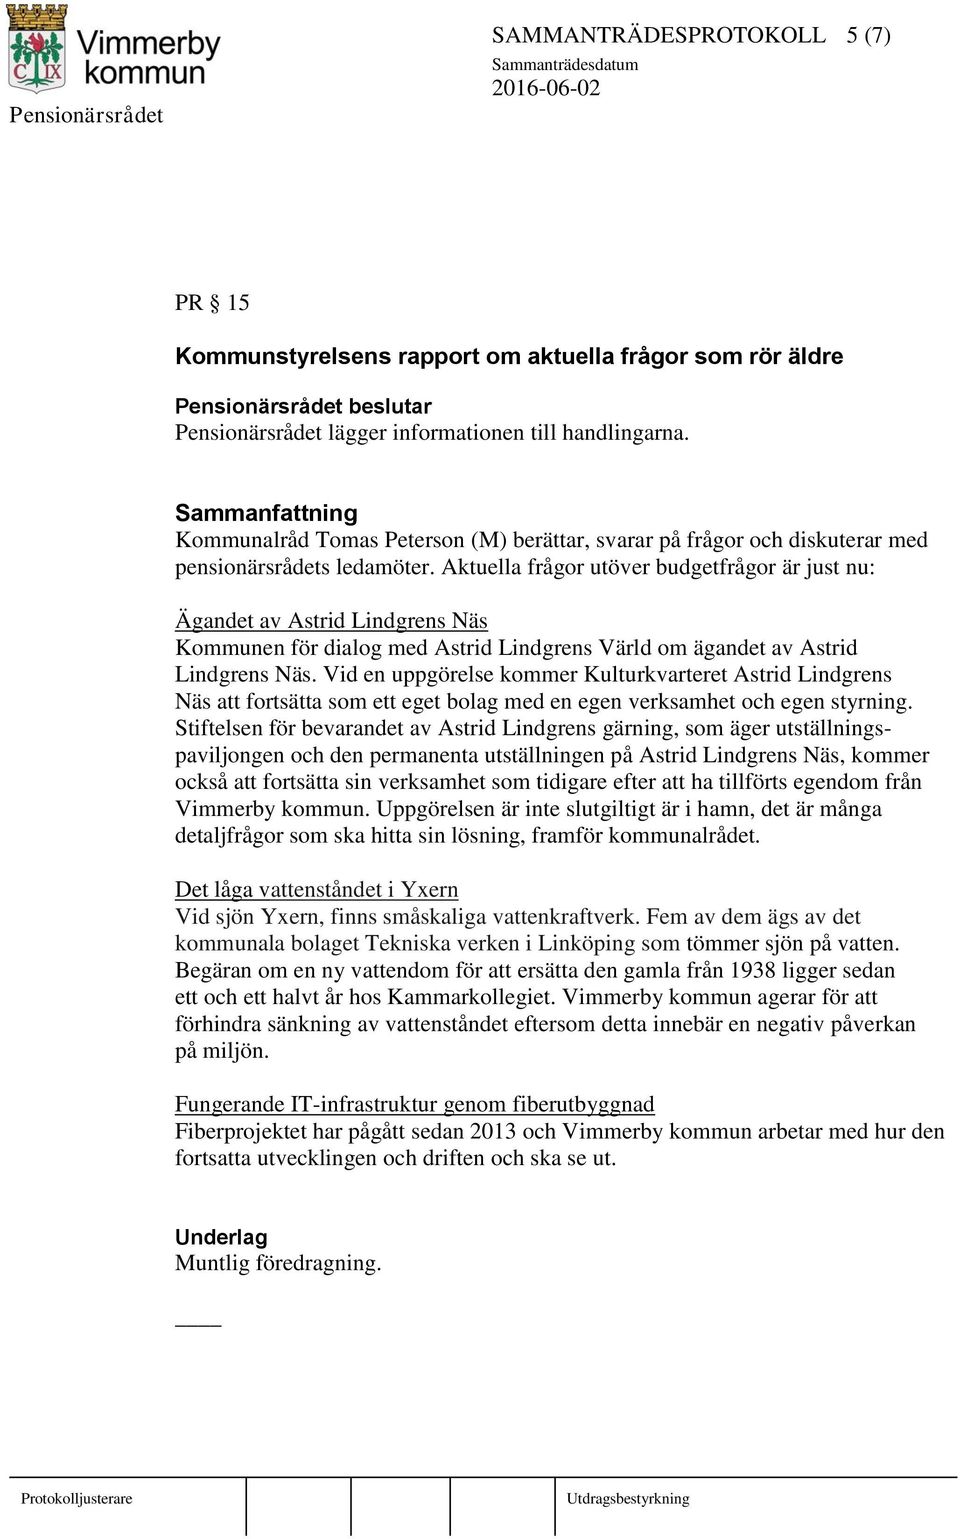 Aktuella frågor utöver budgetfrågor är just nu: Ägandet av Astrid Lindgrens Näs Kommunen för dialog med Astrid Lindgrens Värld om ägandet av Astrid Lindgrens Näs.